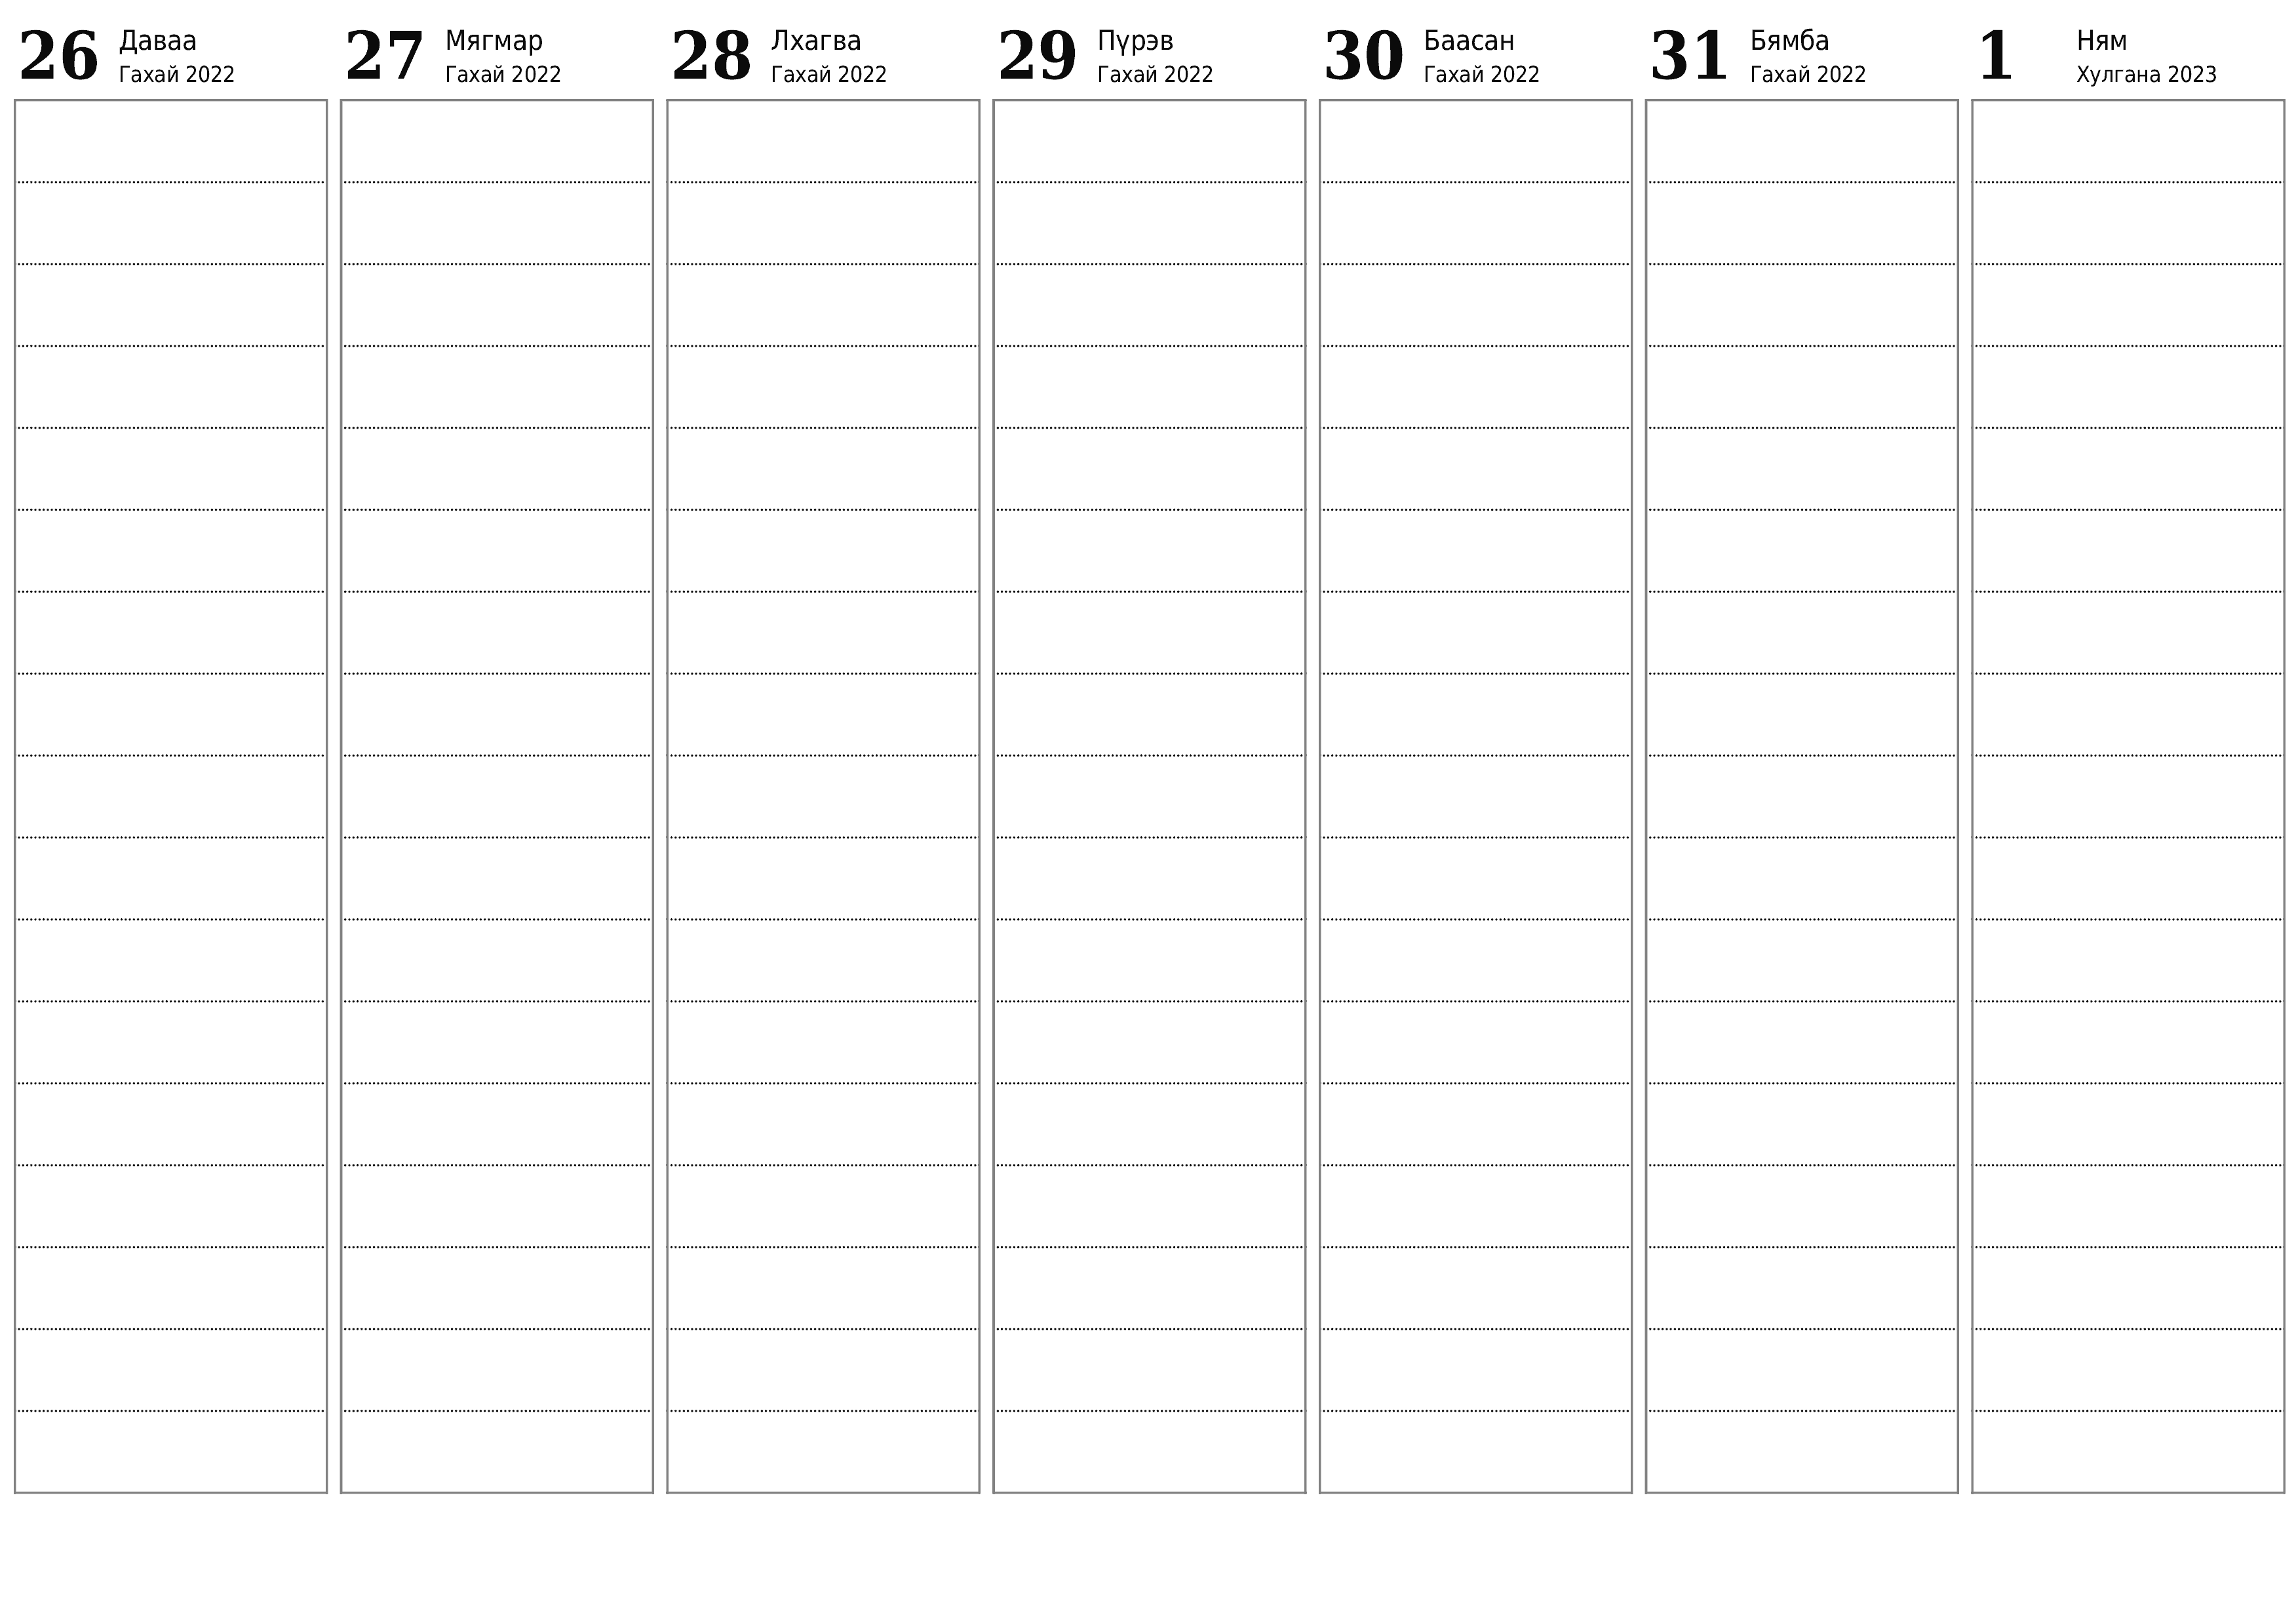 хэвлэх боломжтой ханын календарийн загвар үнэгүй хэвтээ Долоо хоног бүр төлөвлөгч хуанли Хулгана (Хул) 2023